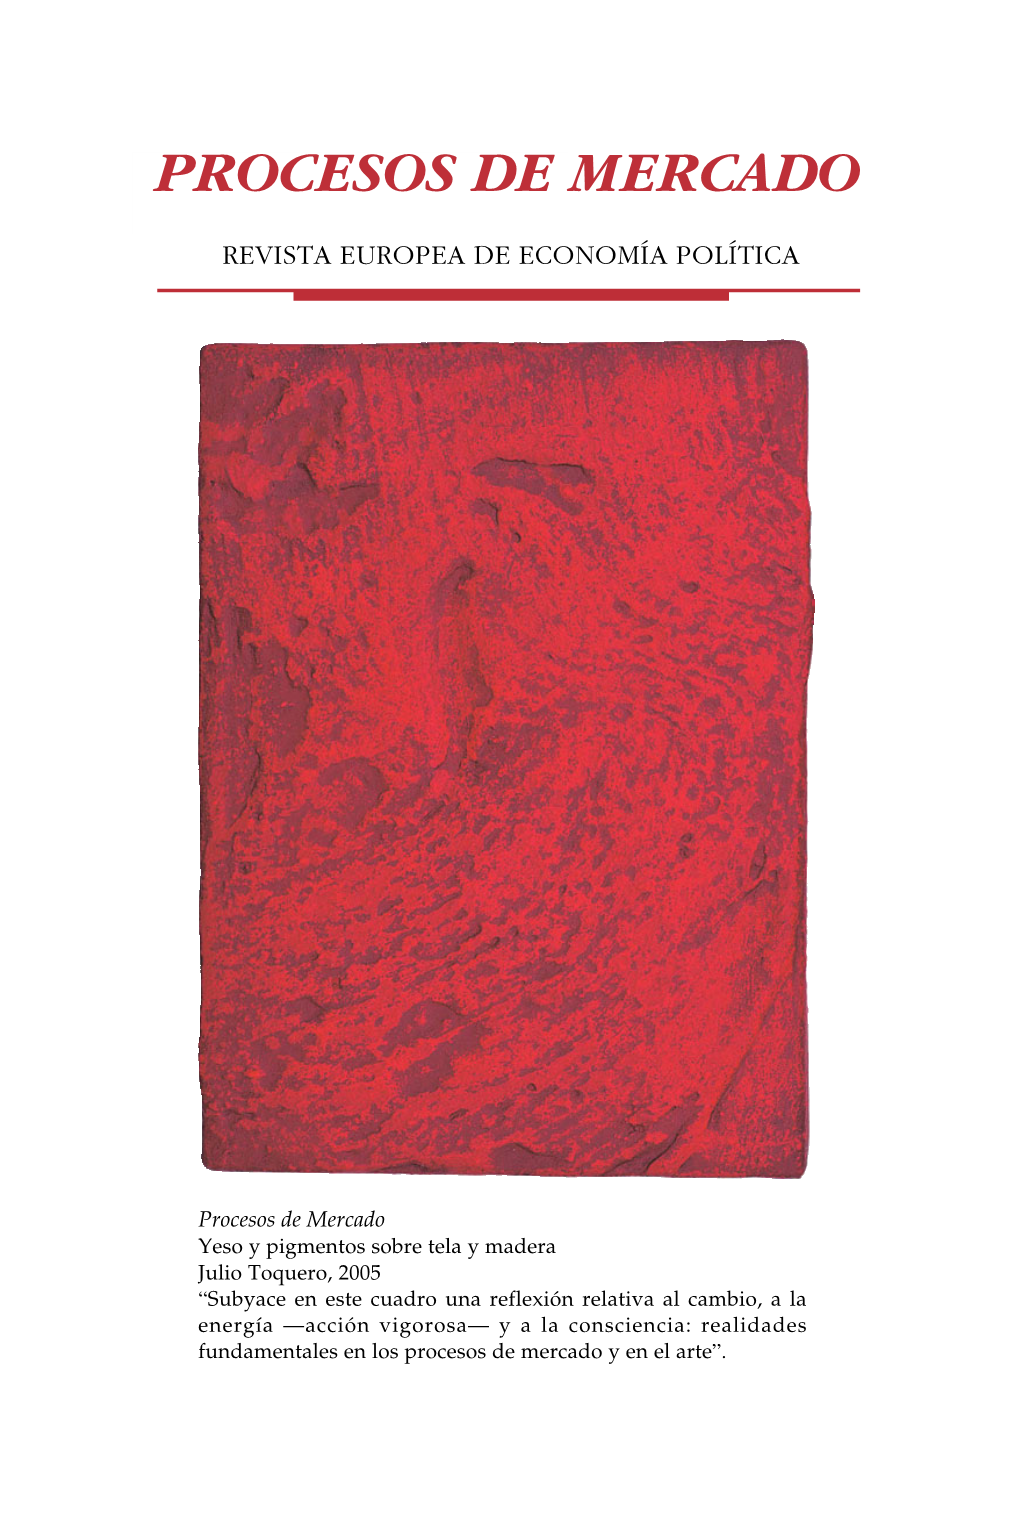 La Escuela Austriaca: Mercado Y Creatividad Empresarial De Jesús Huerta De Soto (Editorial Síntesis, S.A., Madrid, 2000